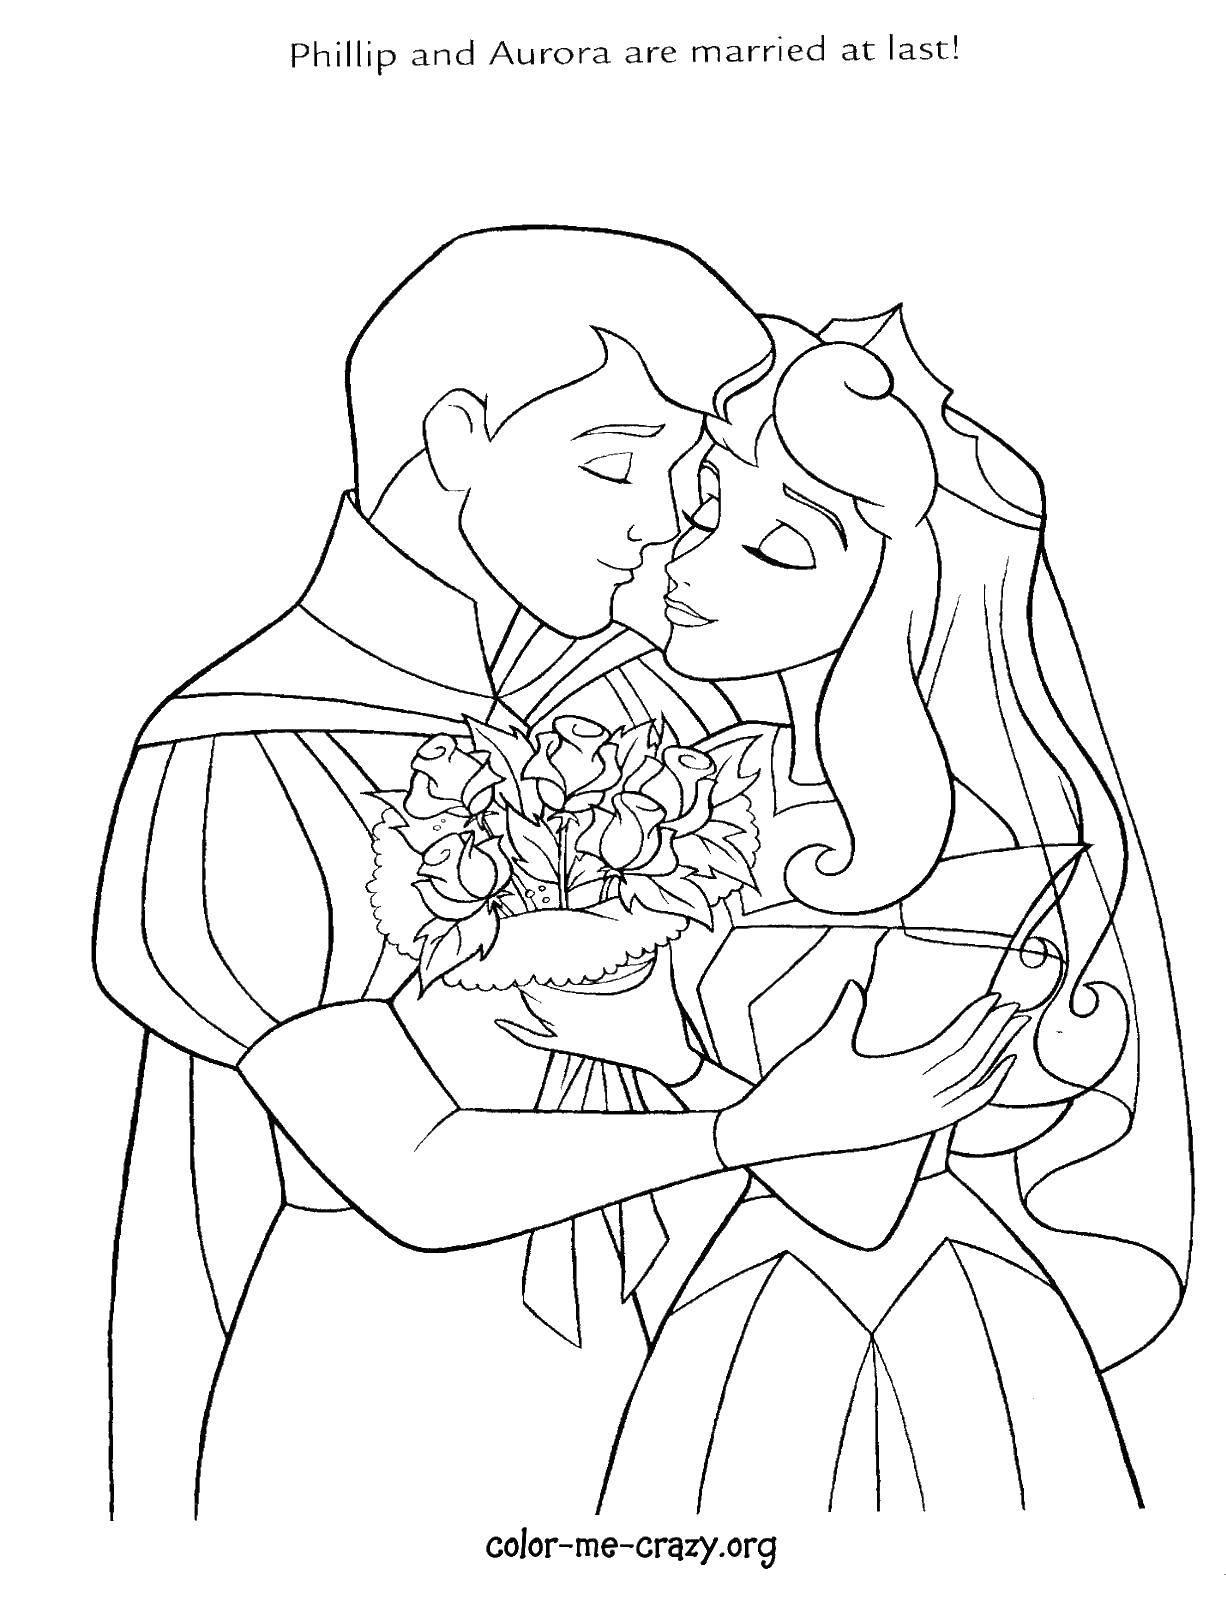 Название: Раскраска Филипп и аврора поженились. Категория: Свадьба. Теги: свадьба, принц, принцесса, Аврора.